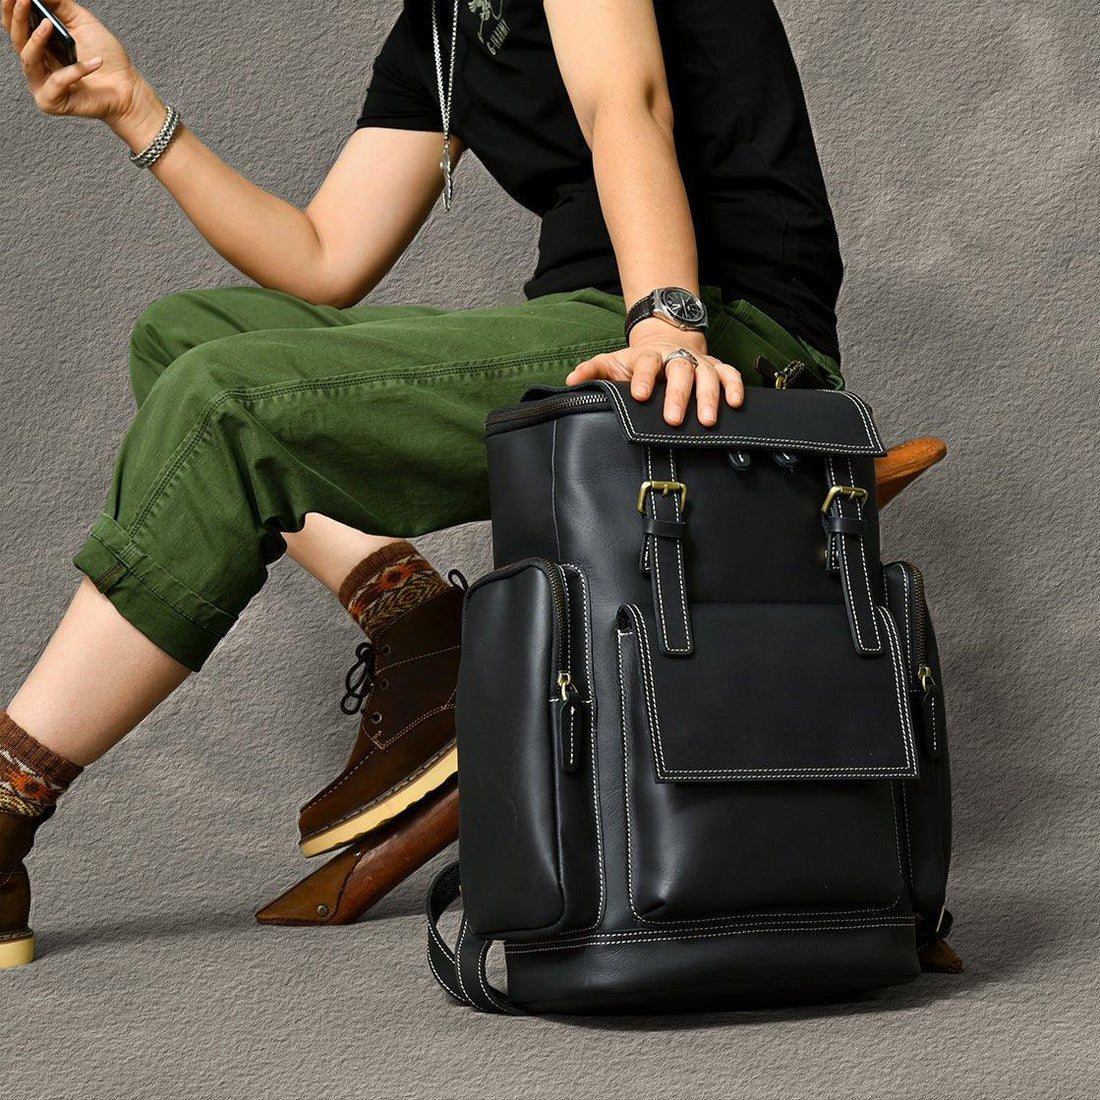 5 BEST Vintage Leather Backpacks of 2022 - Woosir